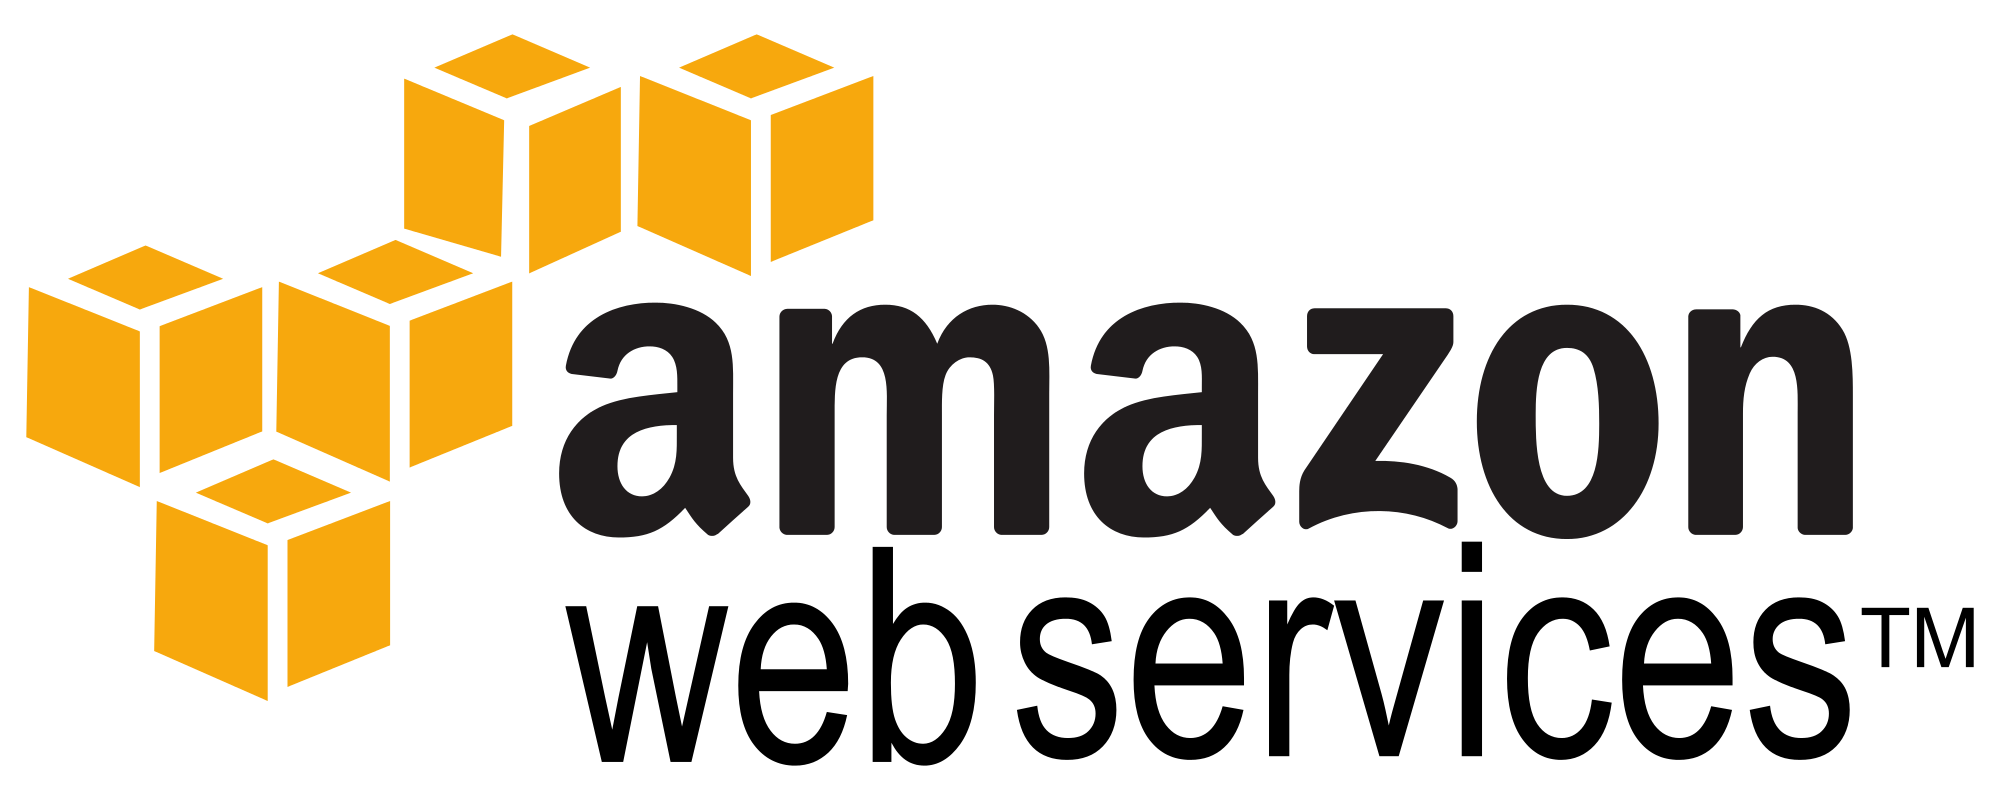 amazon-aws-small-logo-2015-11-11